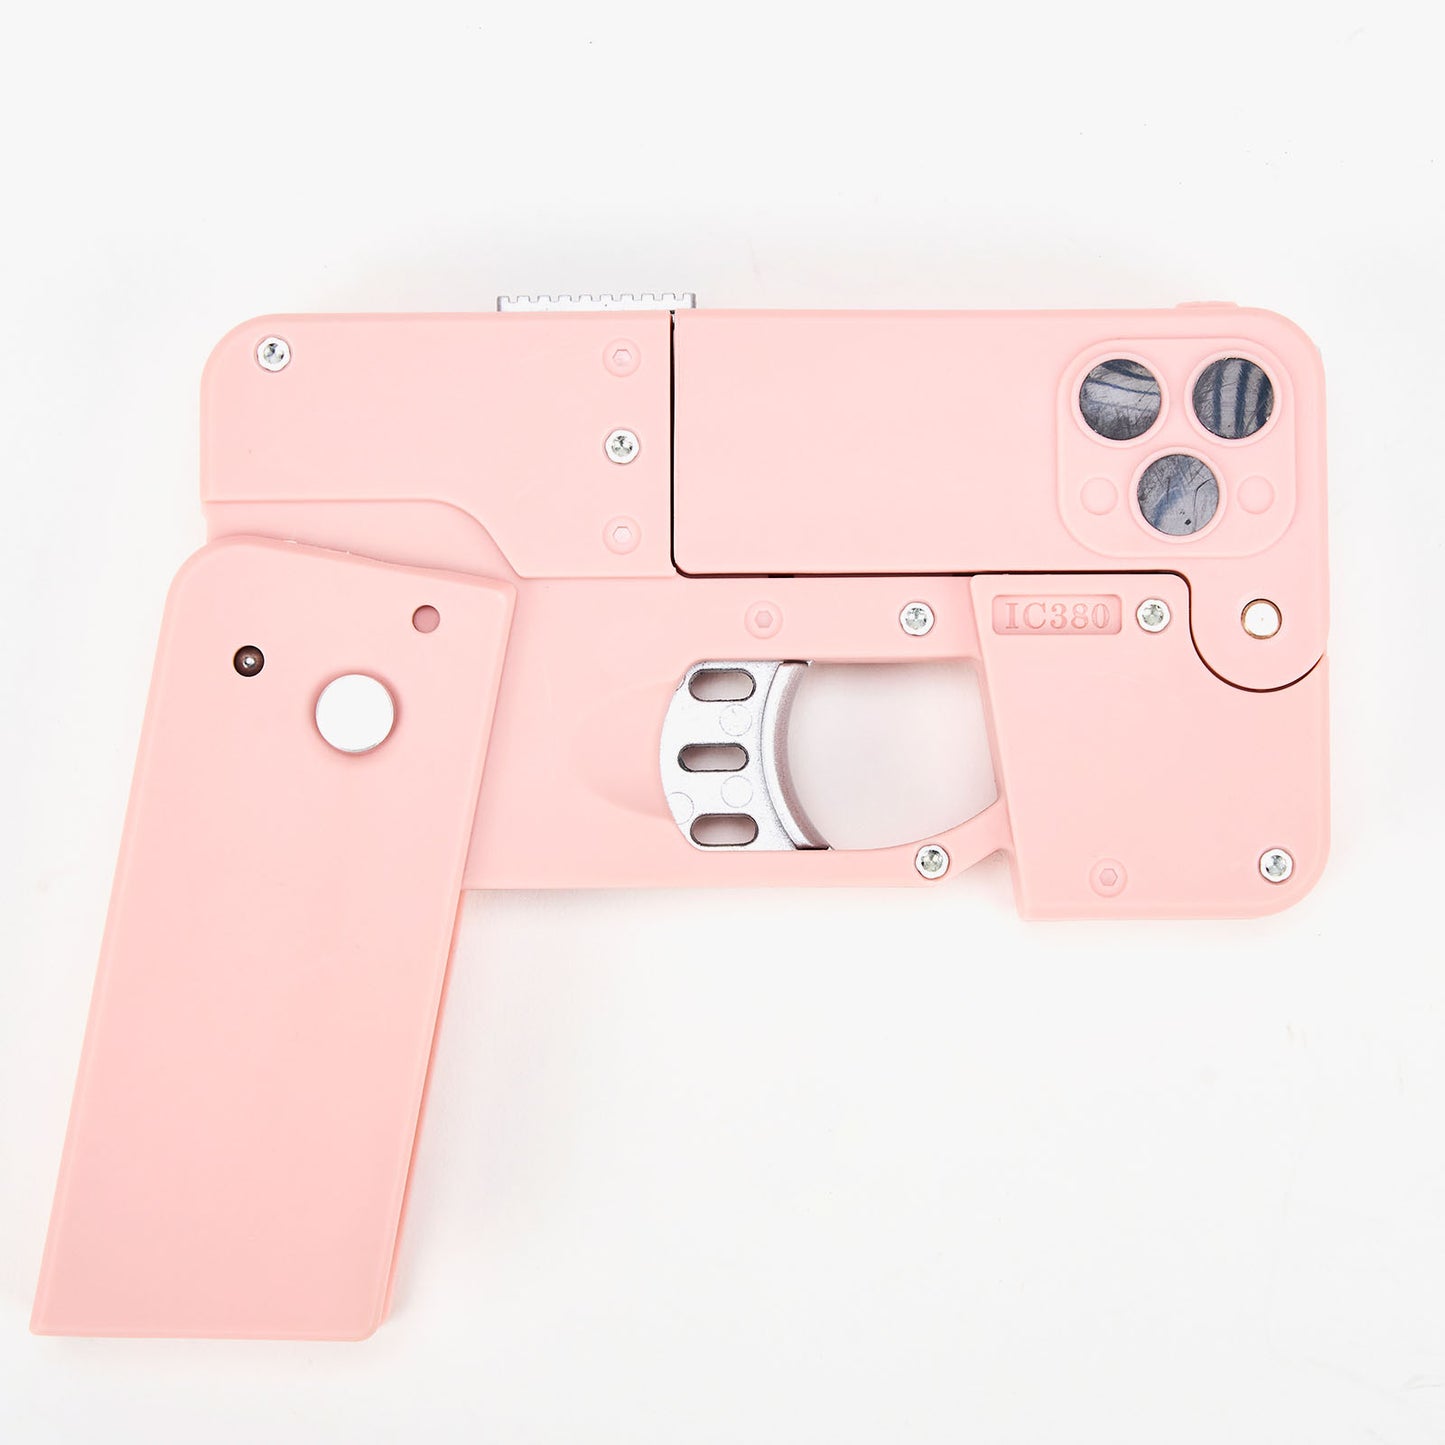 Phone Toy Pistol